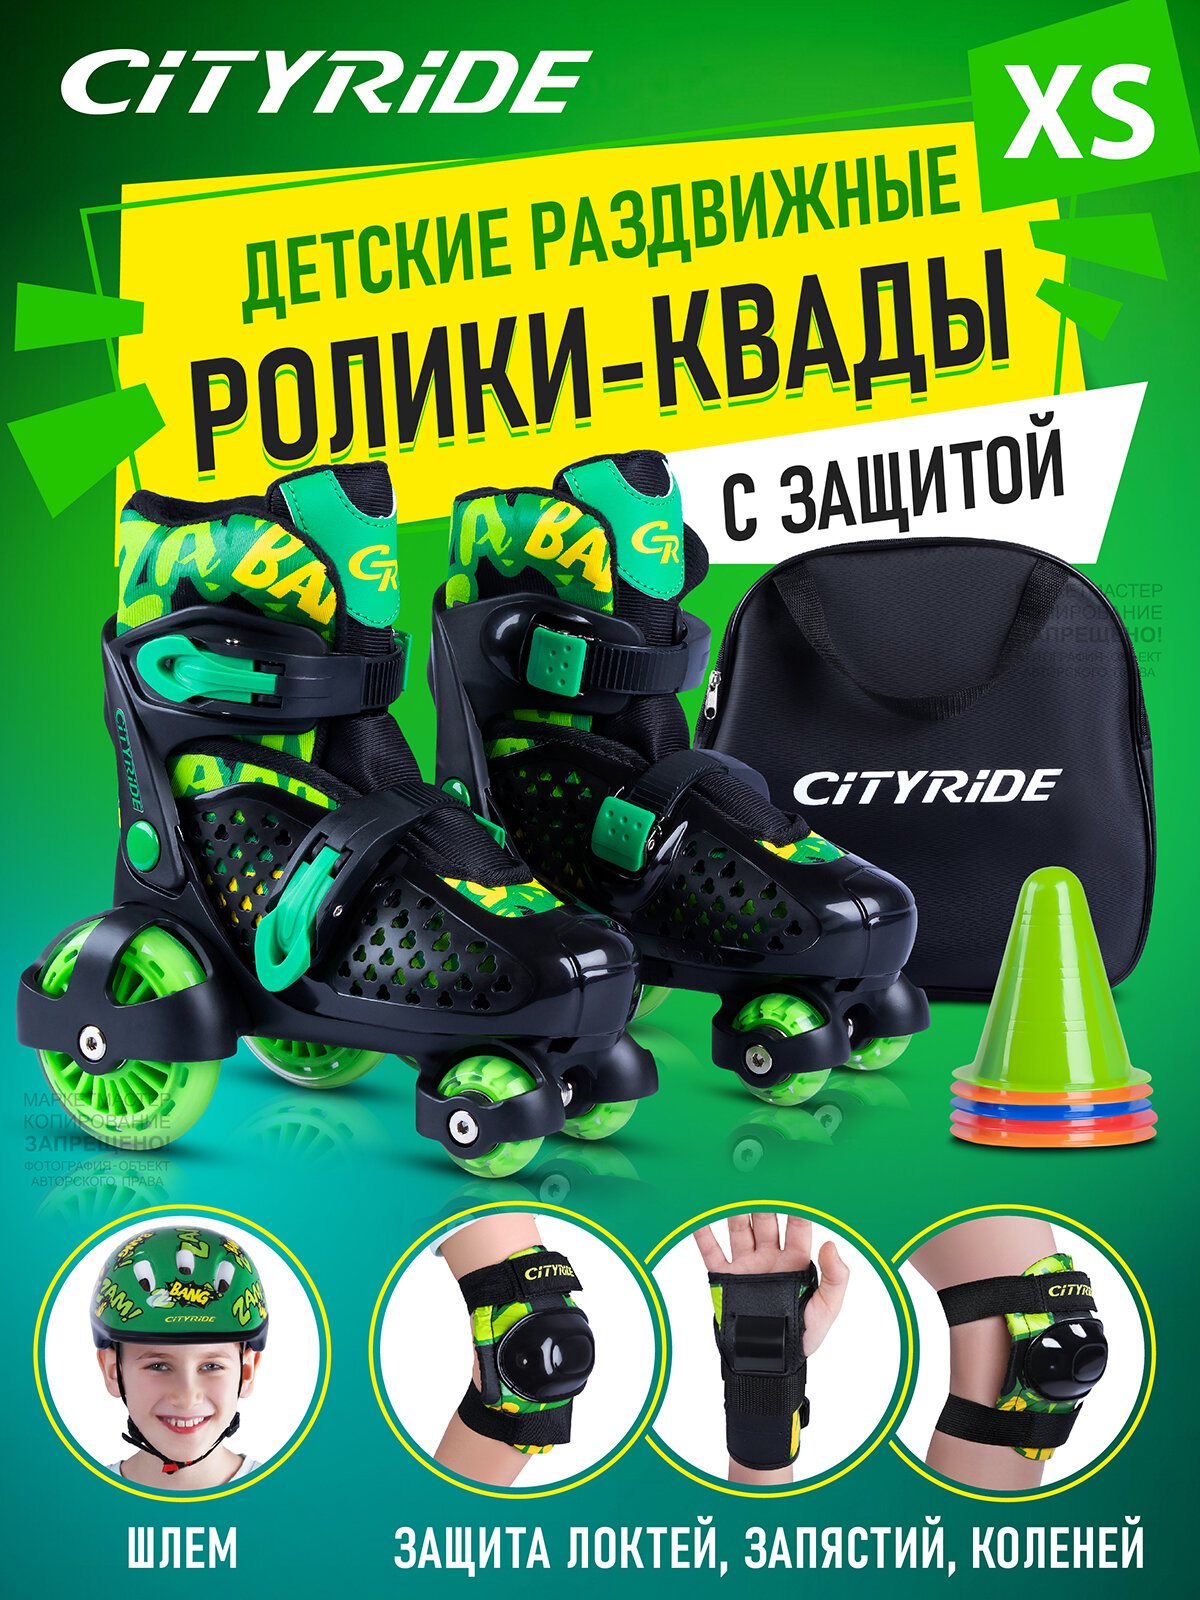 Набор CITYRIDE роликовые коньки-квады, шлем, защита, пластиковый мысок, колёса PU 80/40 мм, JB8800102/XS